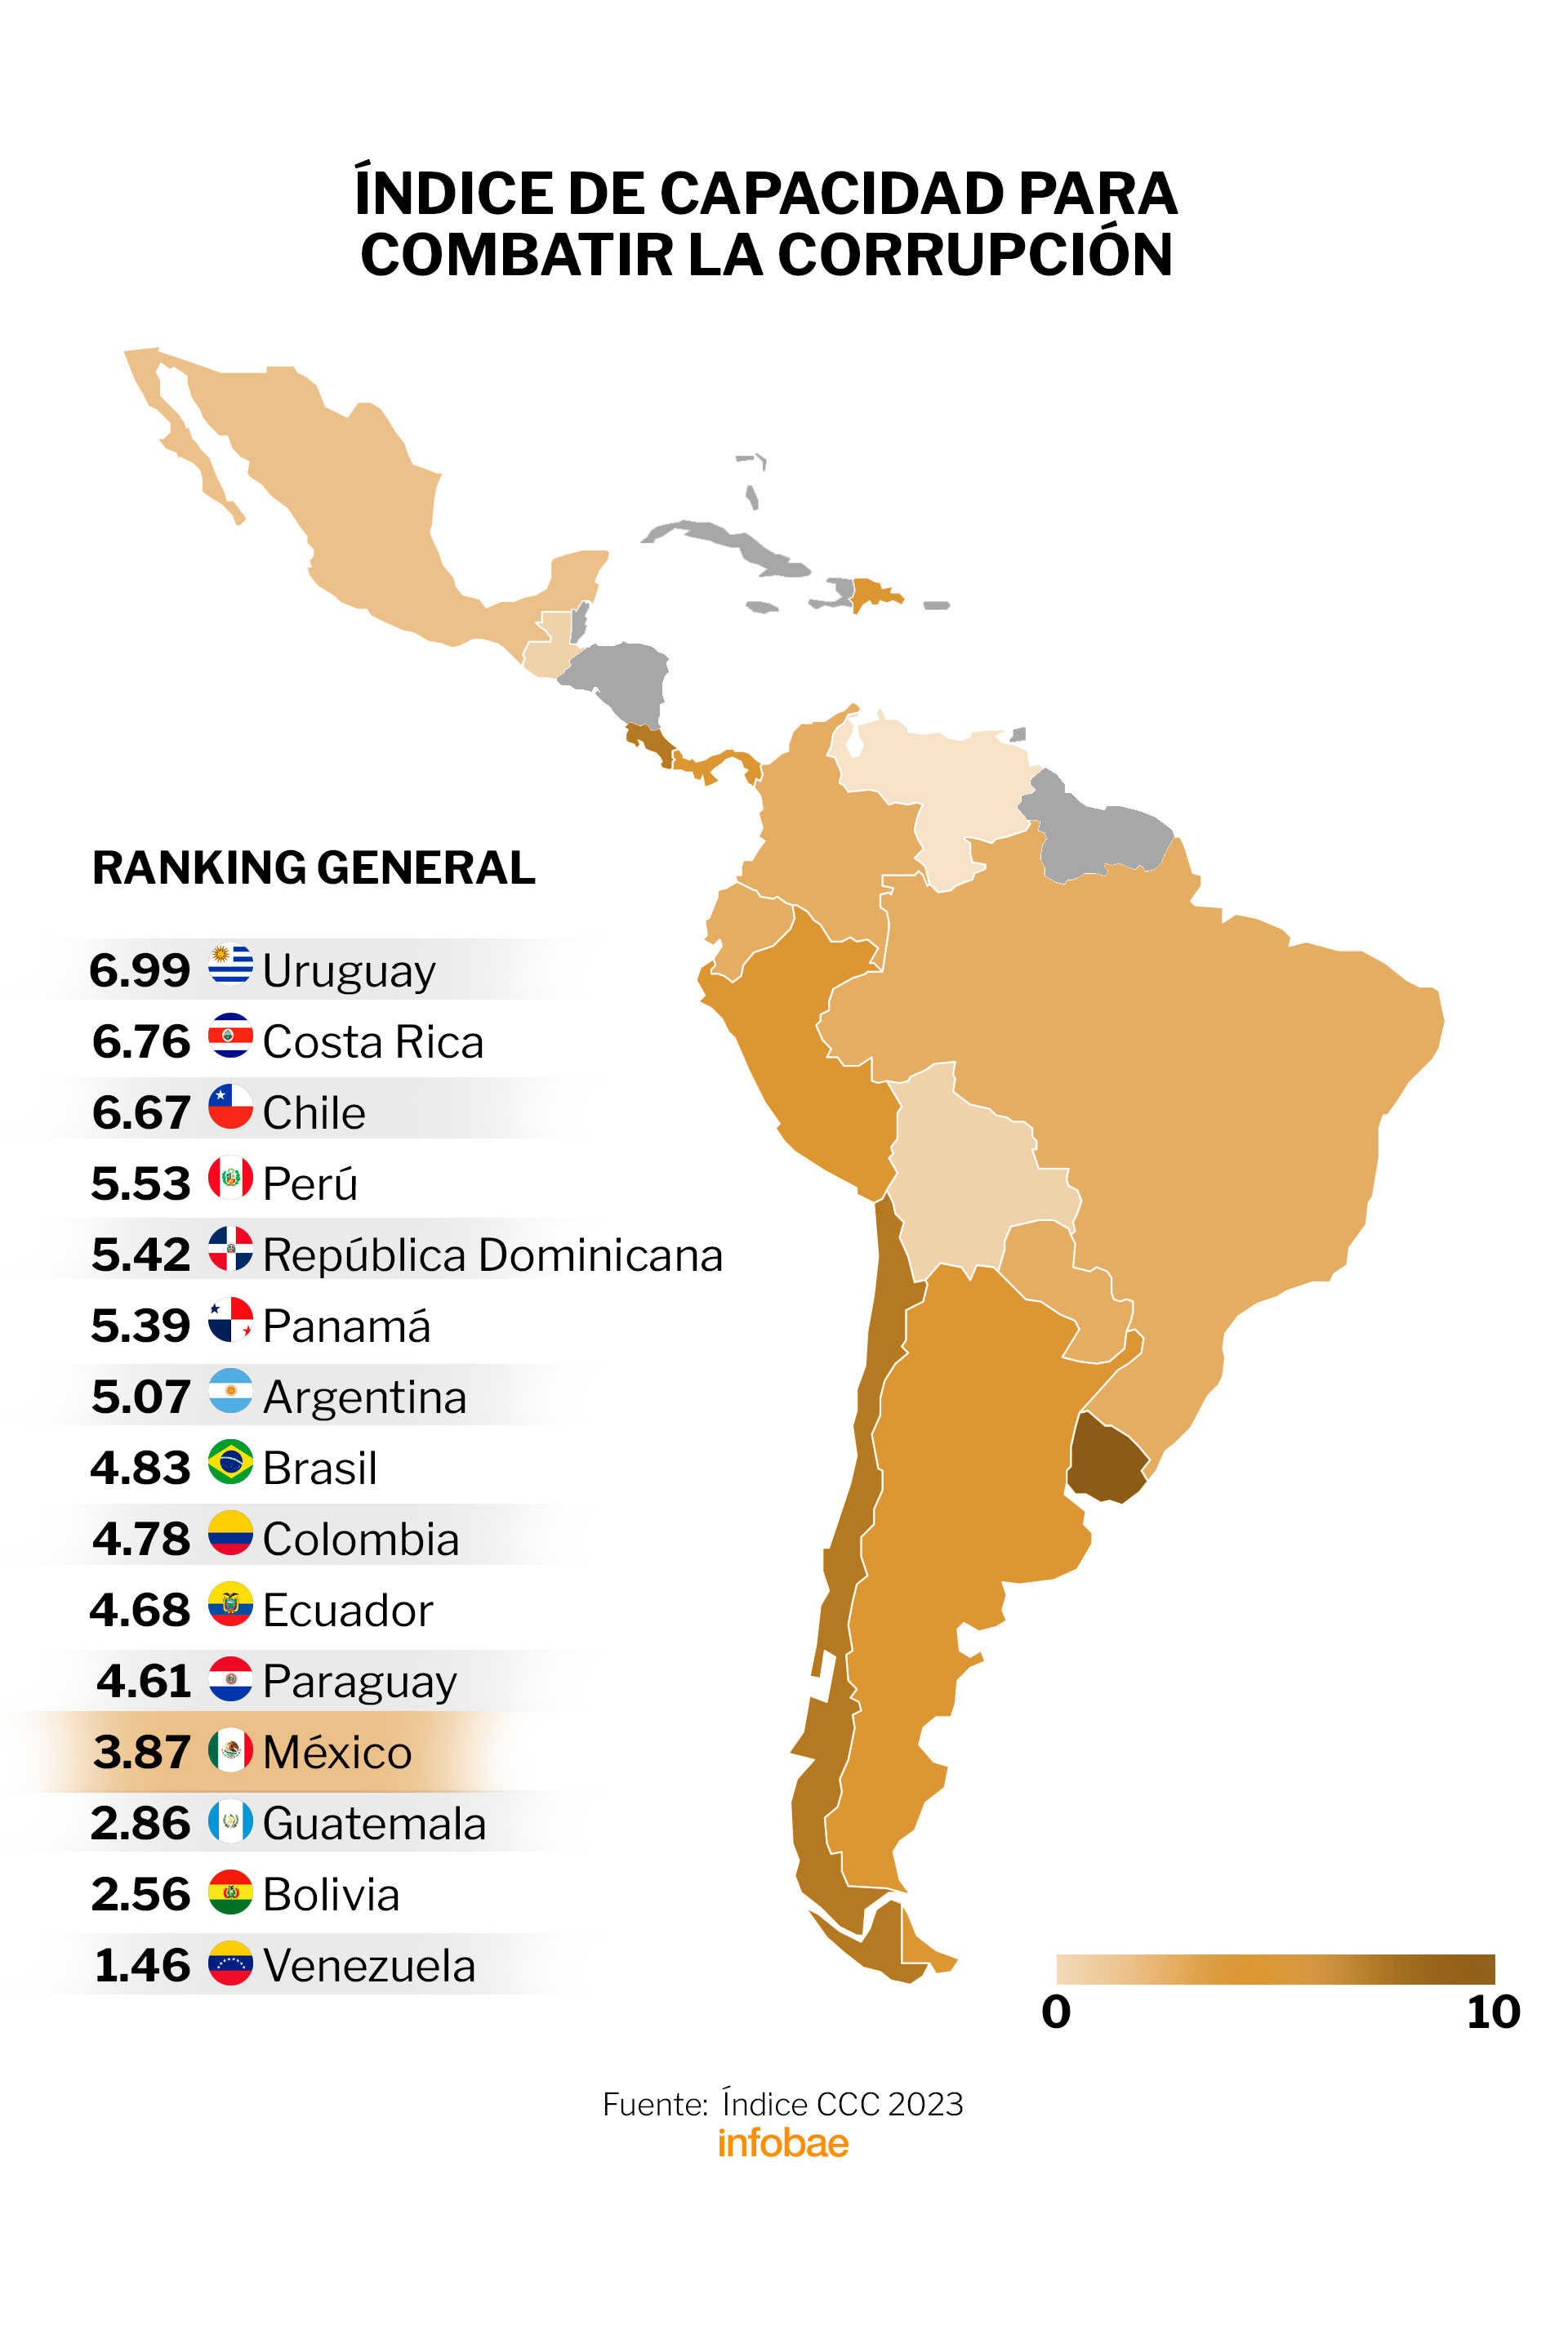 El ranking evaluó a 15 naciones de América Latina